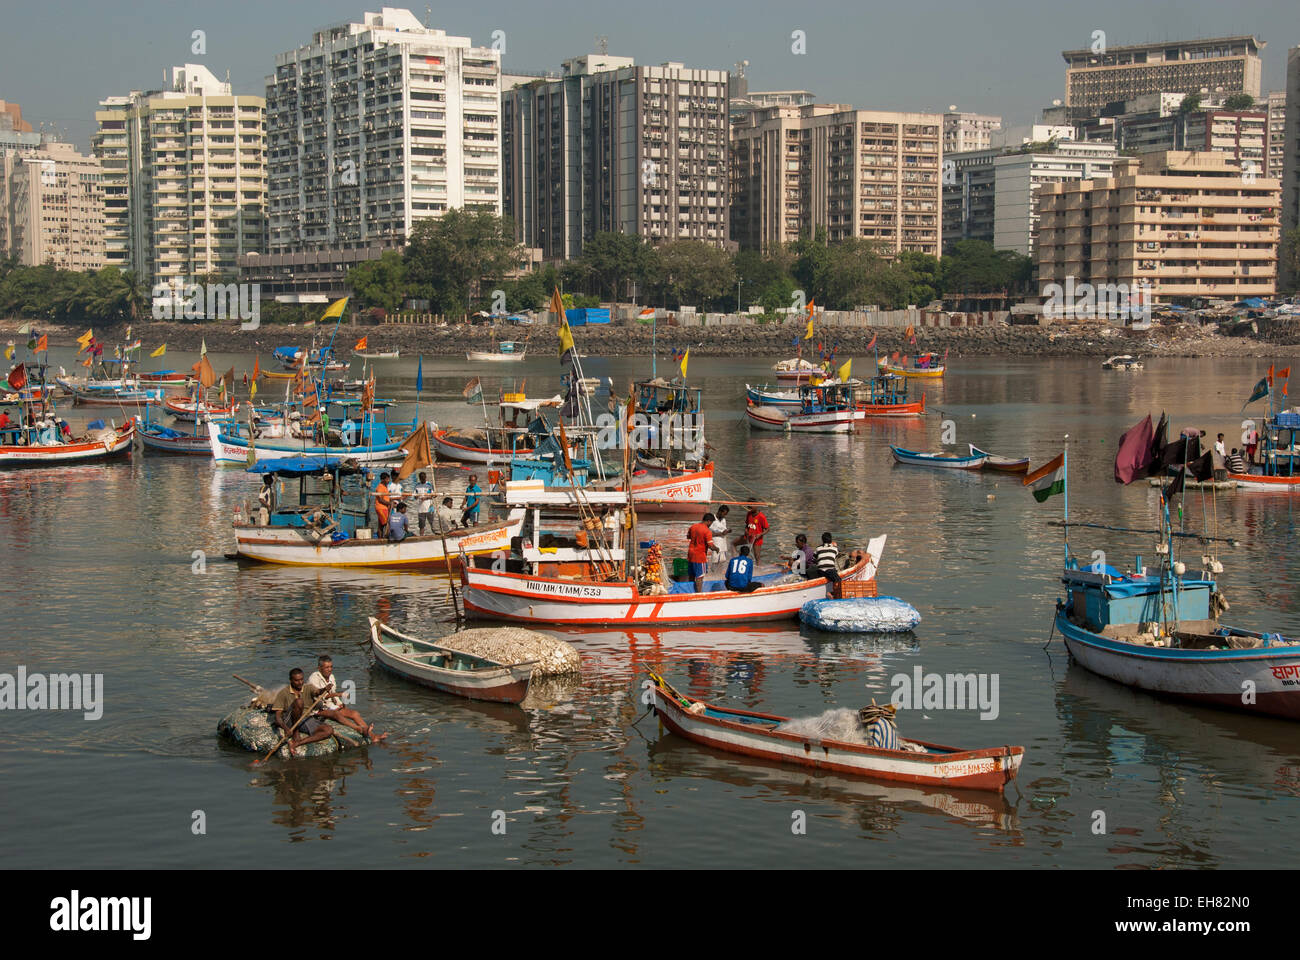 La flotte de pêche de Colaba ses terres prises dans Back Bay, l'extrémité sud de la ville de Mumbai, Maharashtra, Inde, Asie Banque D'Images